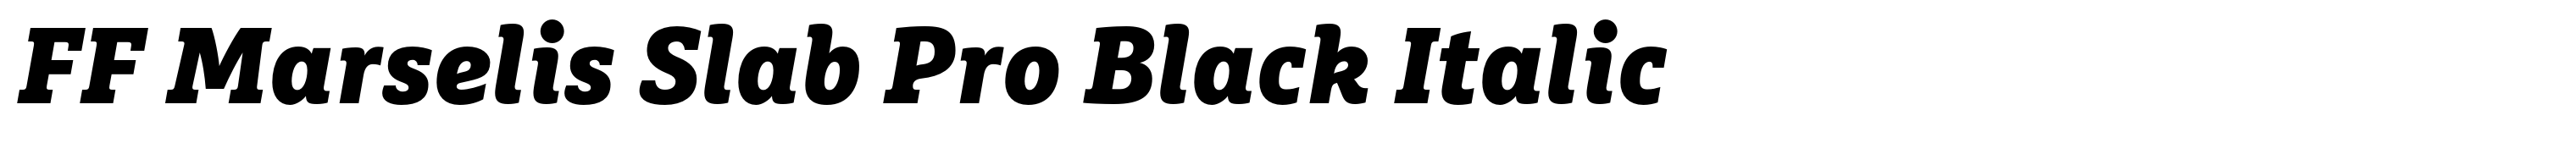 FF Marselis Slab Pro Black Italic